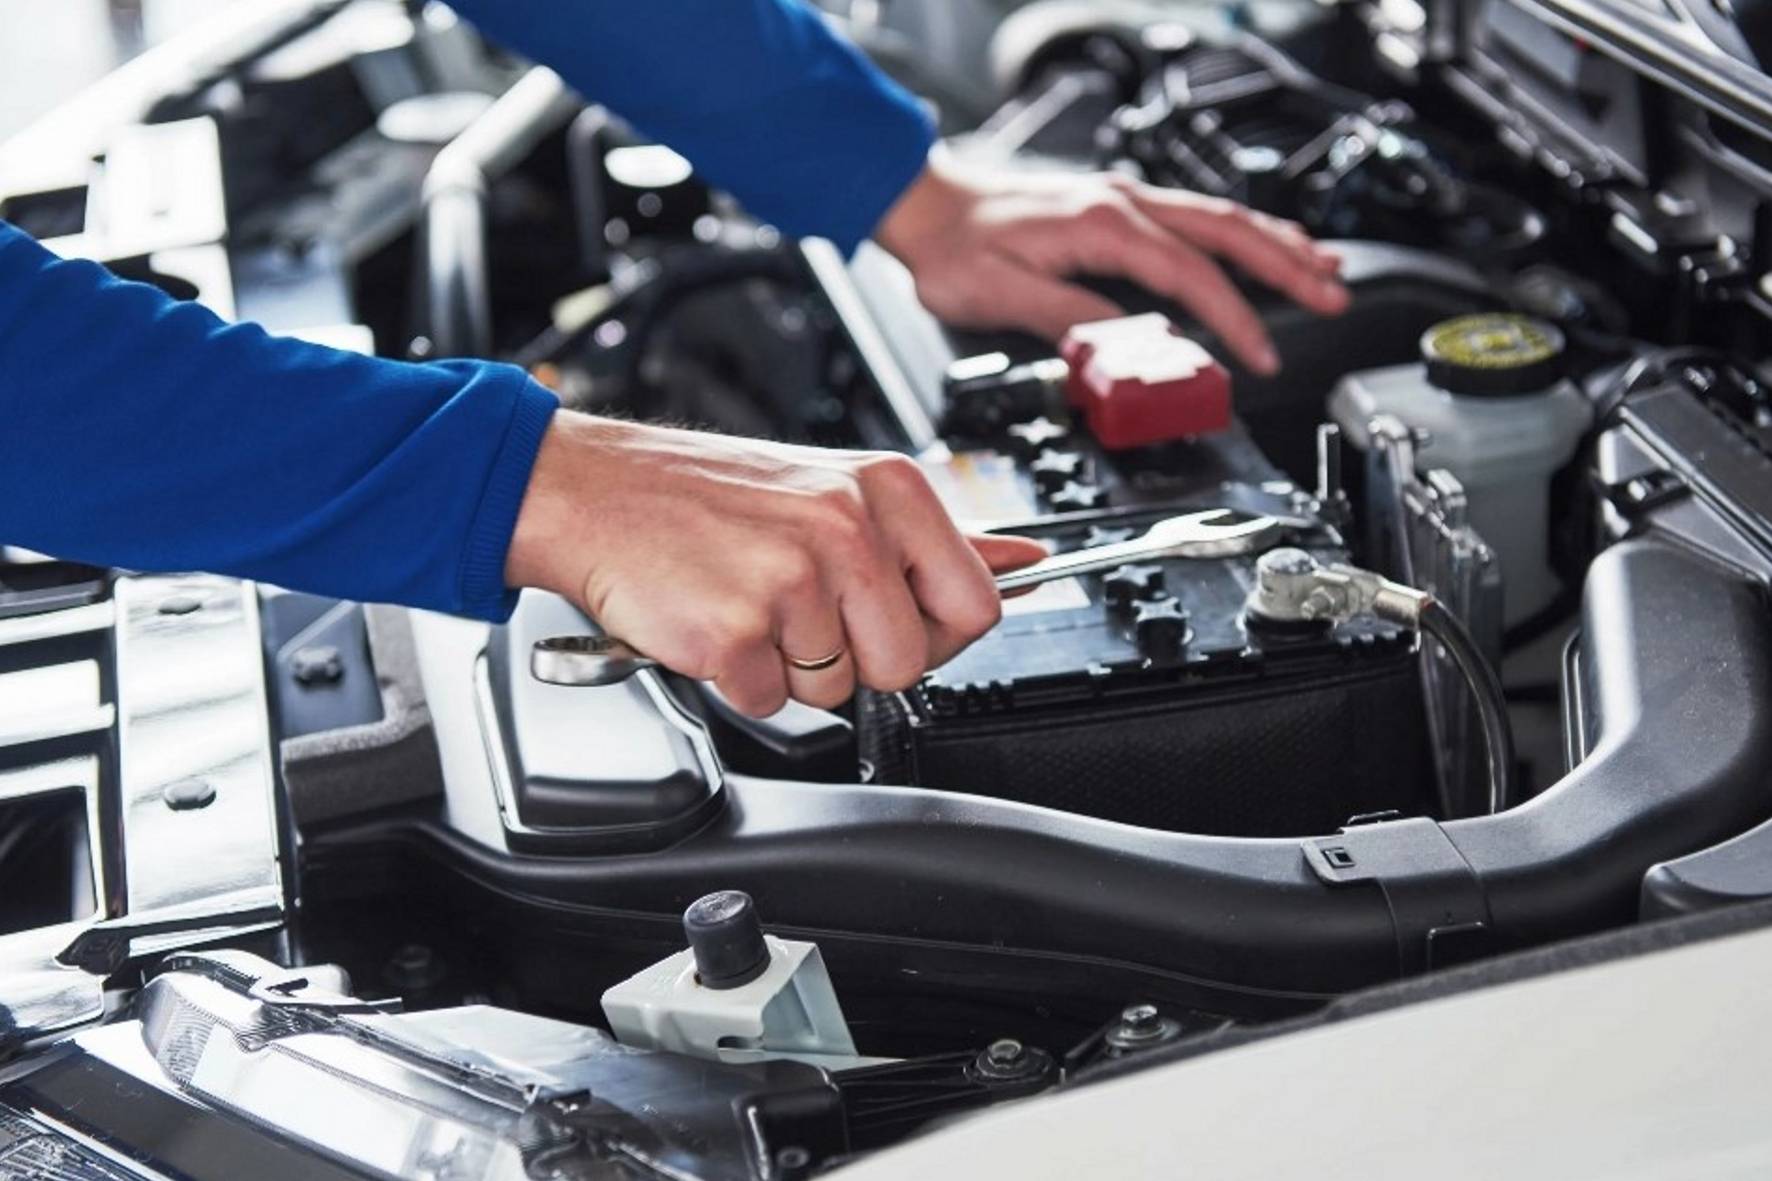 Техническое обслуживание и ремонт автомобиля: когда нужно делать?